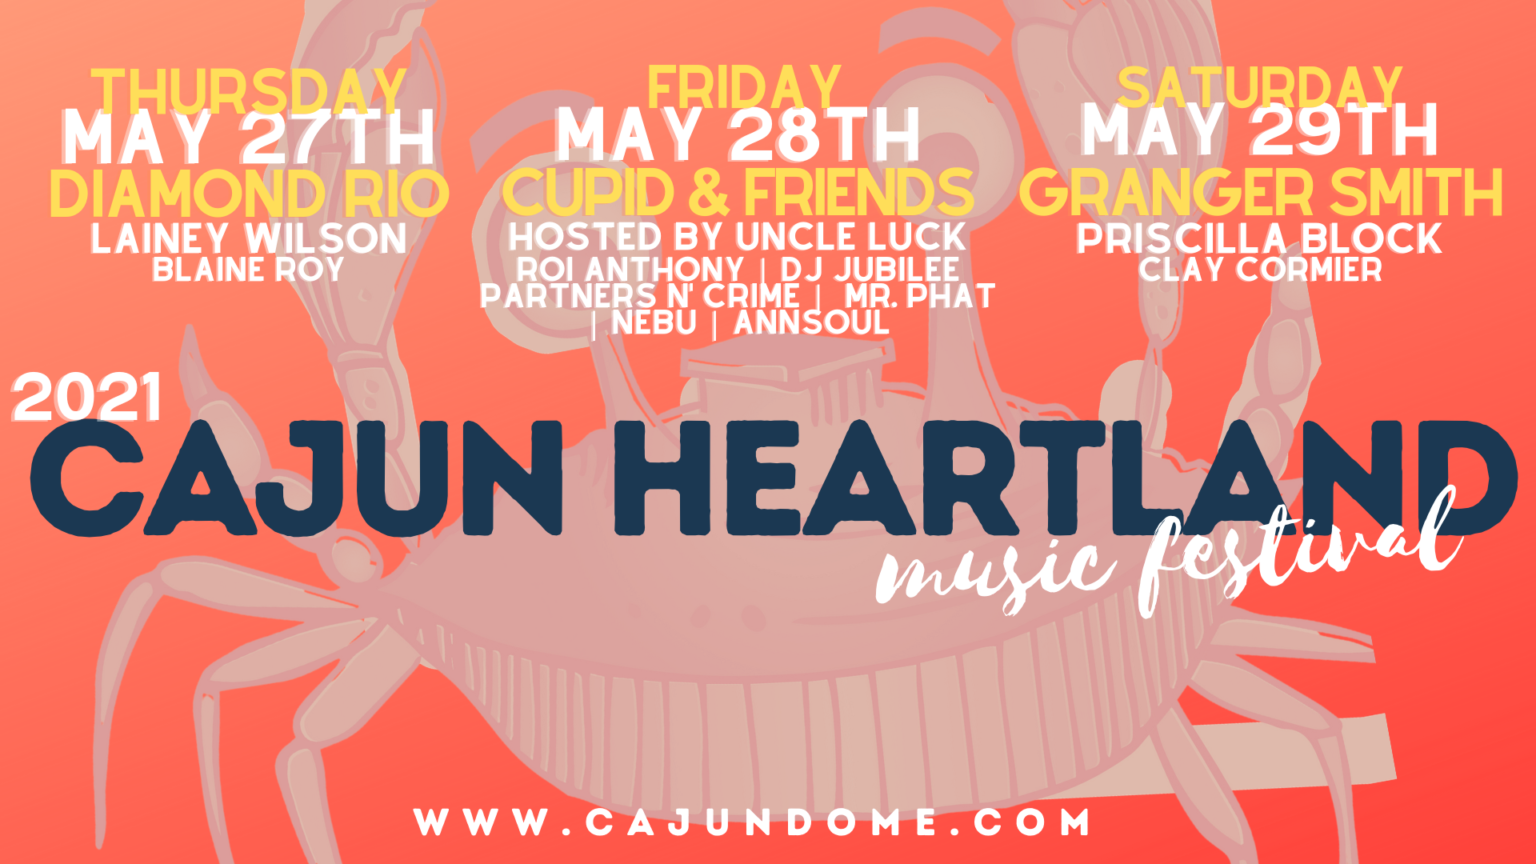 Cajun Heartland State Fair Music Lineup Announced! News Talk 98.5